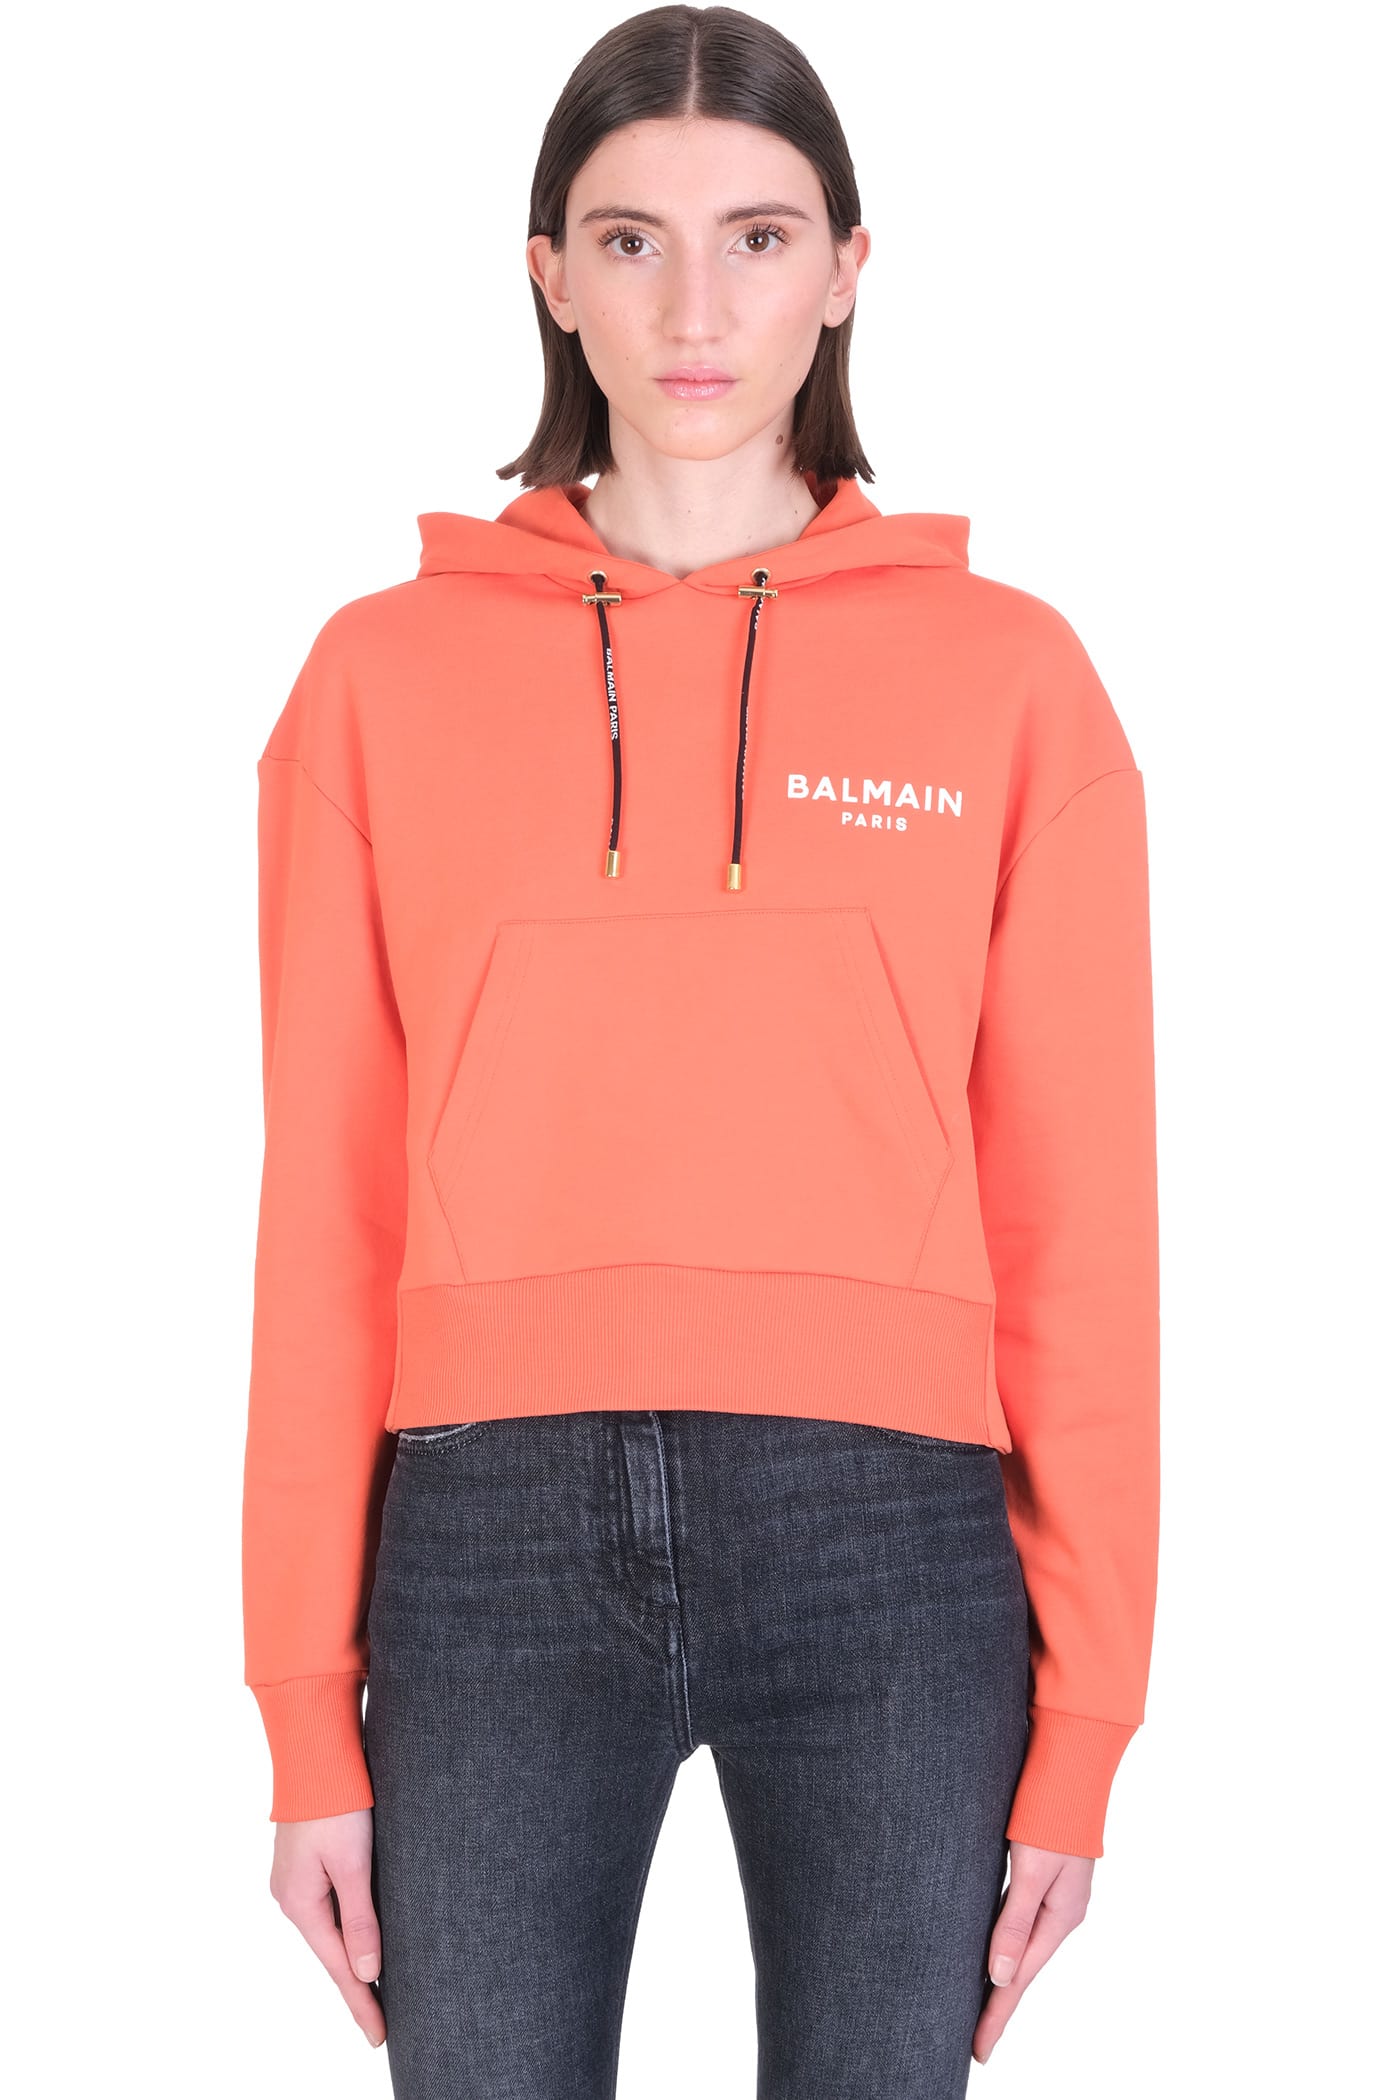 Balmain Sweatshirt In Orange Cotton